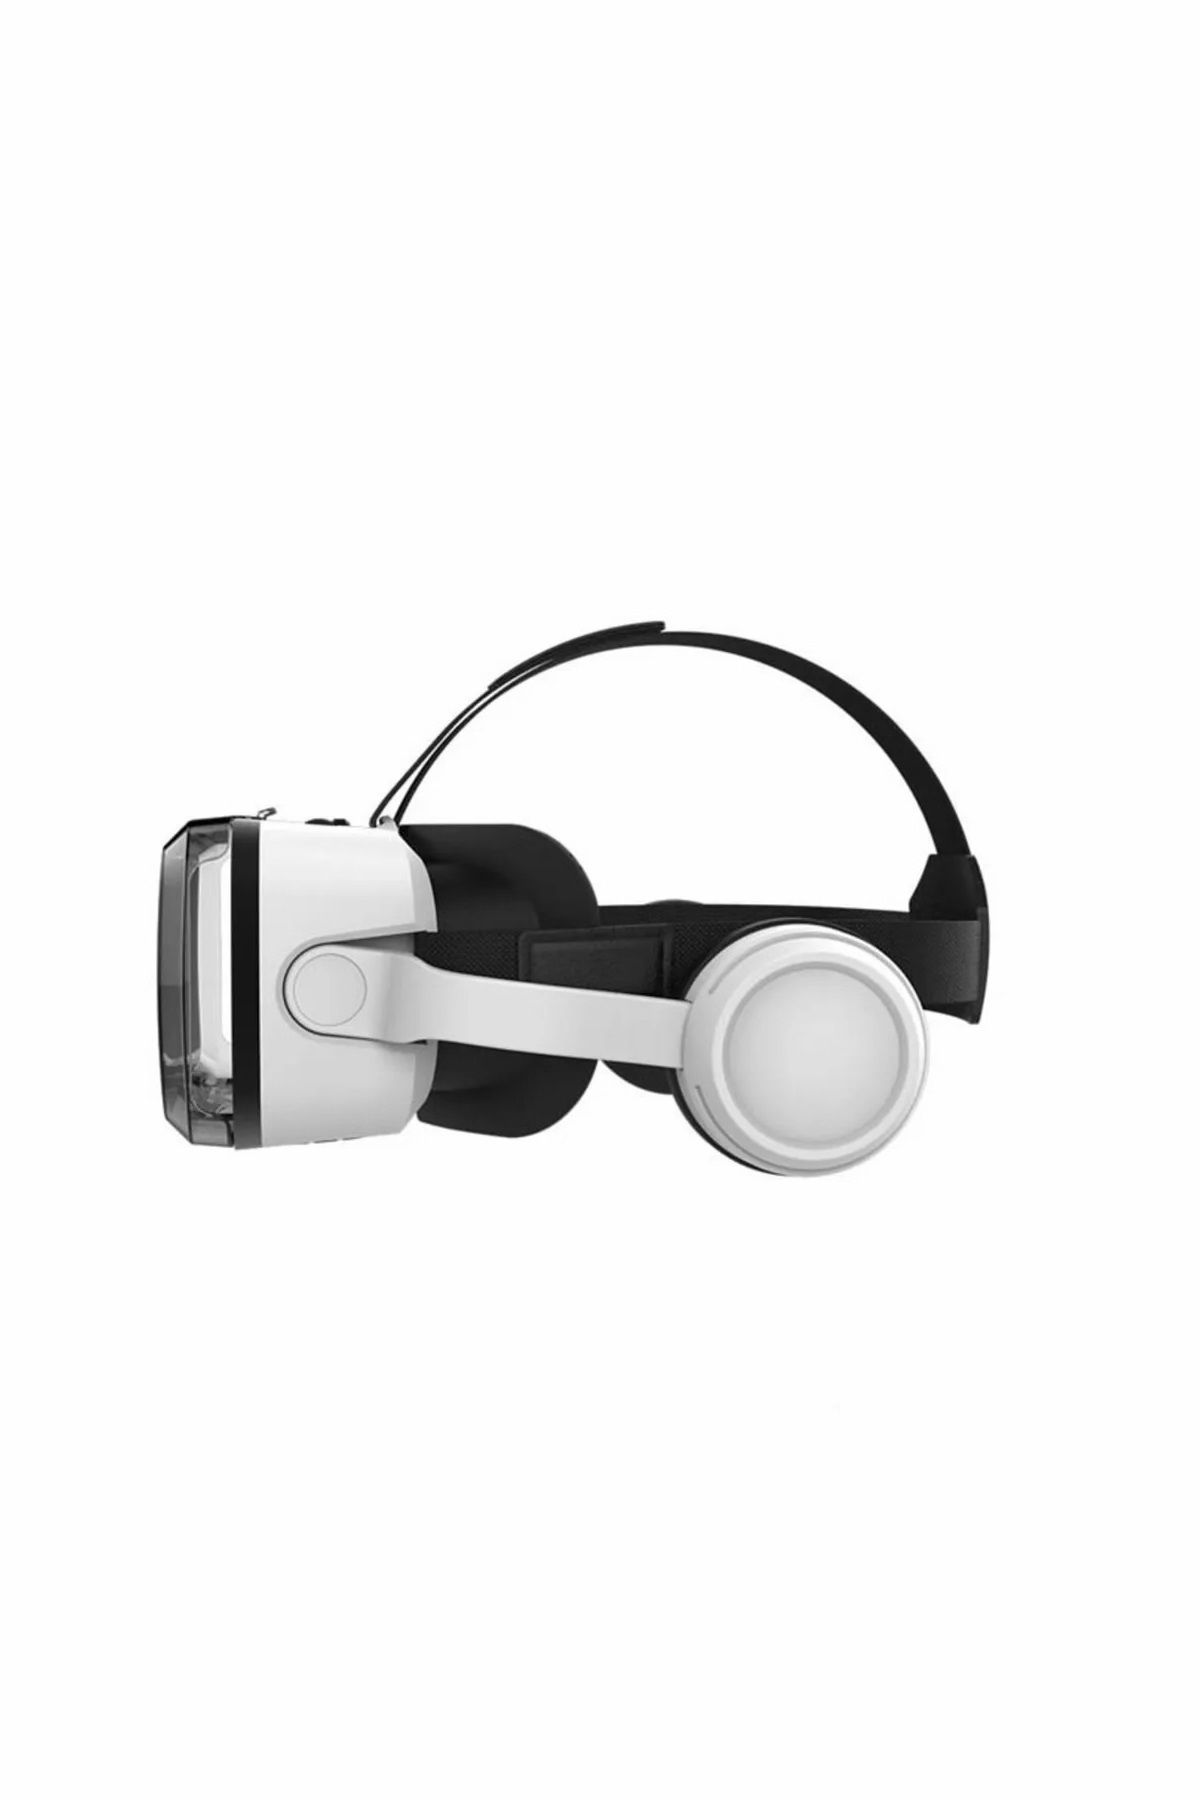 LEN10 Sanal Gerçeklik Gözlüğü Vr Gözlük Bluetooth Kulaklık Reçine Lens 720° Panoramik3dMetaverseFilmler